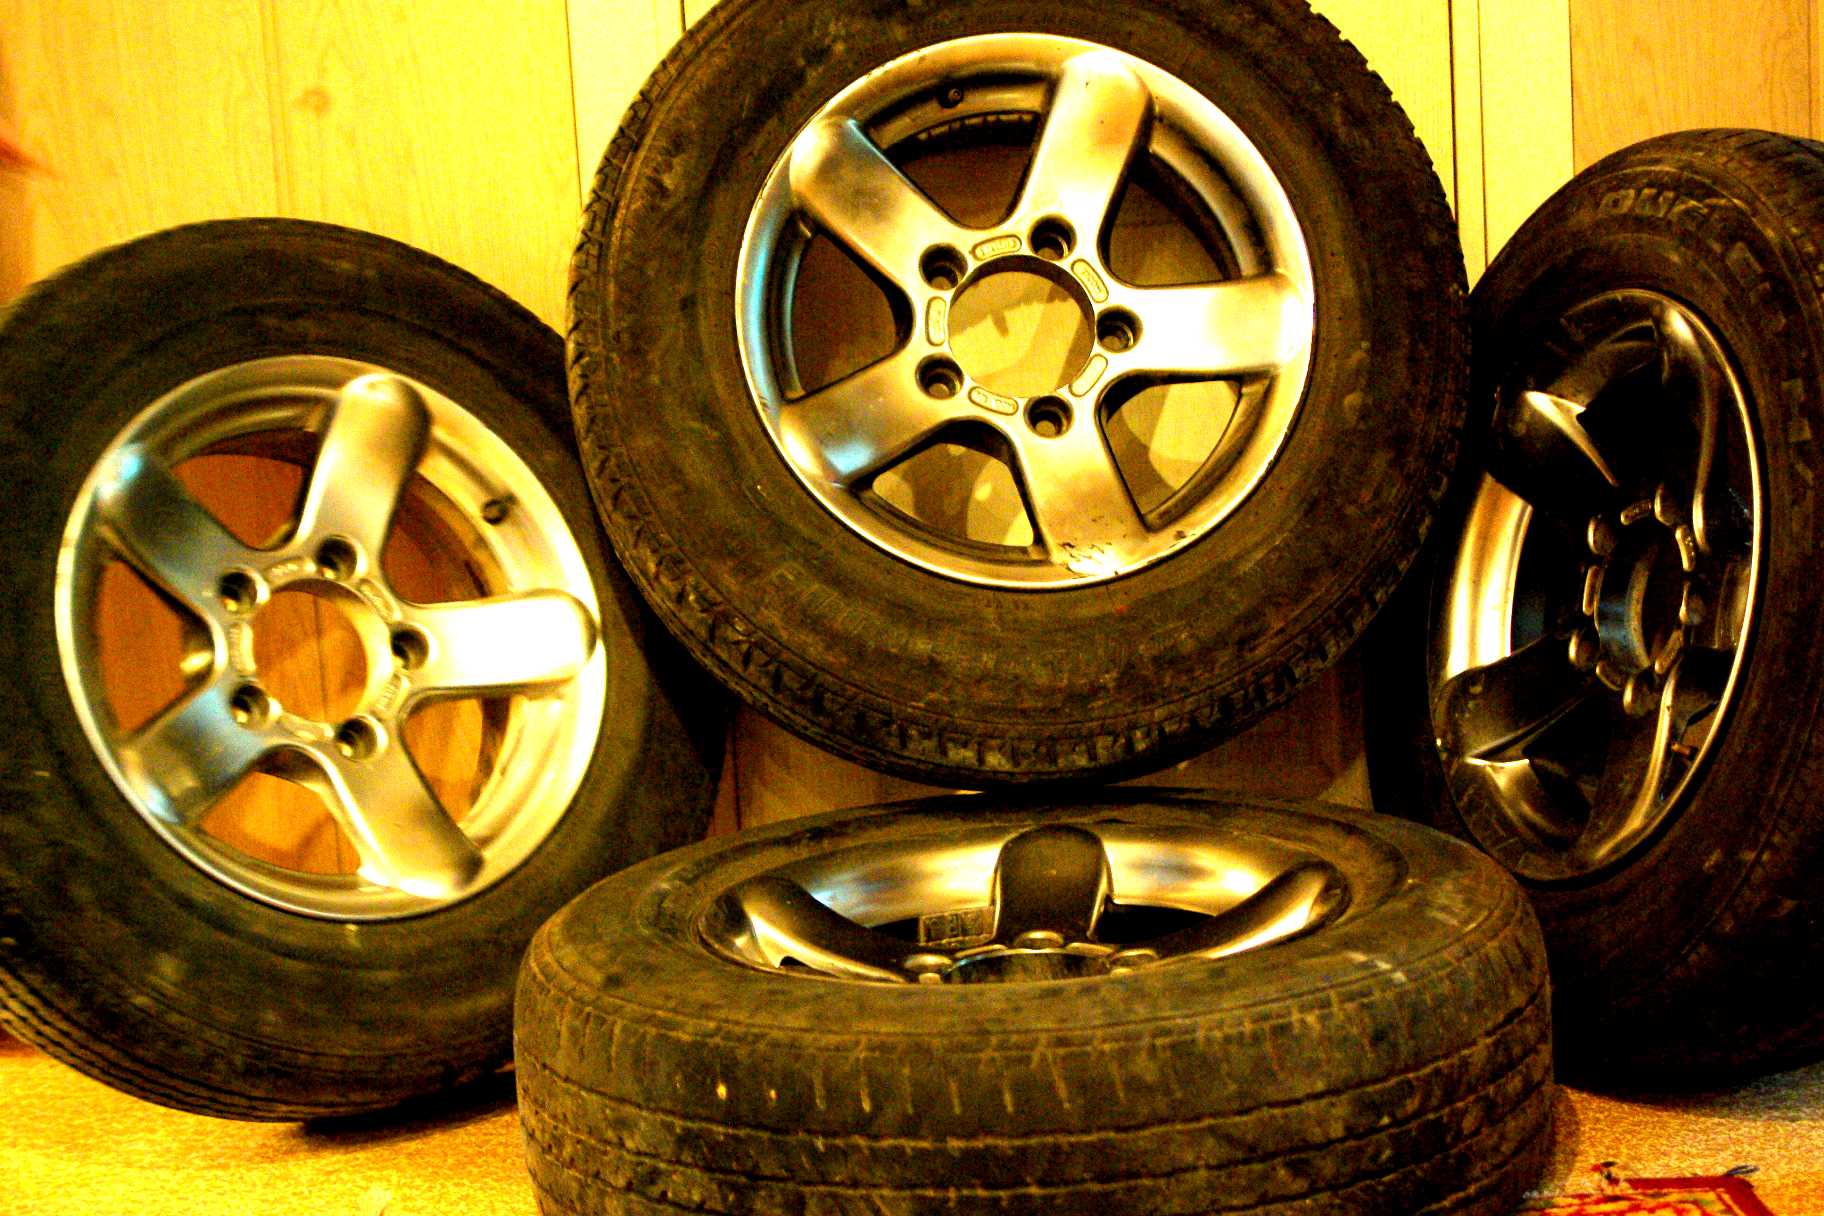 Продажа б у лит. Диски на Suzuki Jimny r15. Литые диски Suzuki Jimny r15. Колеса Suzuki Jimny r15. Диски r16 на ниву Сузуки.